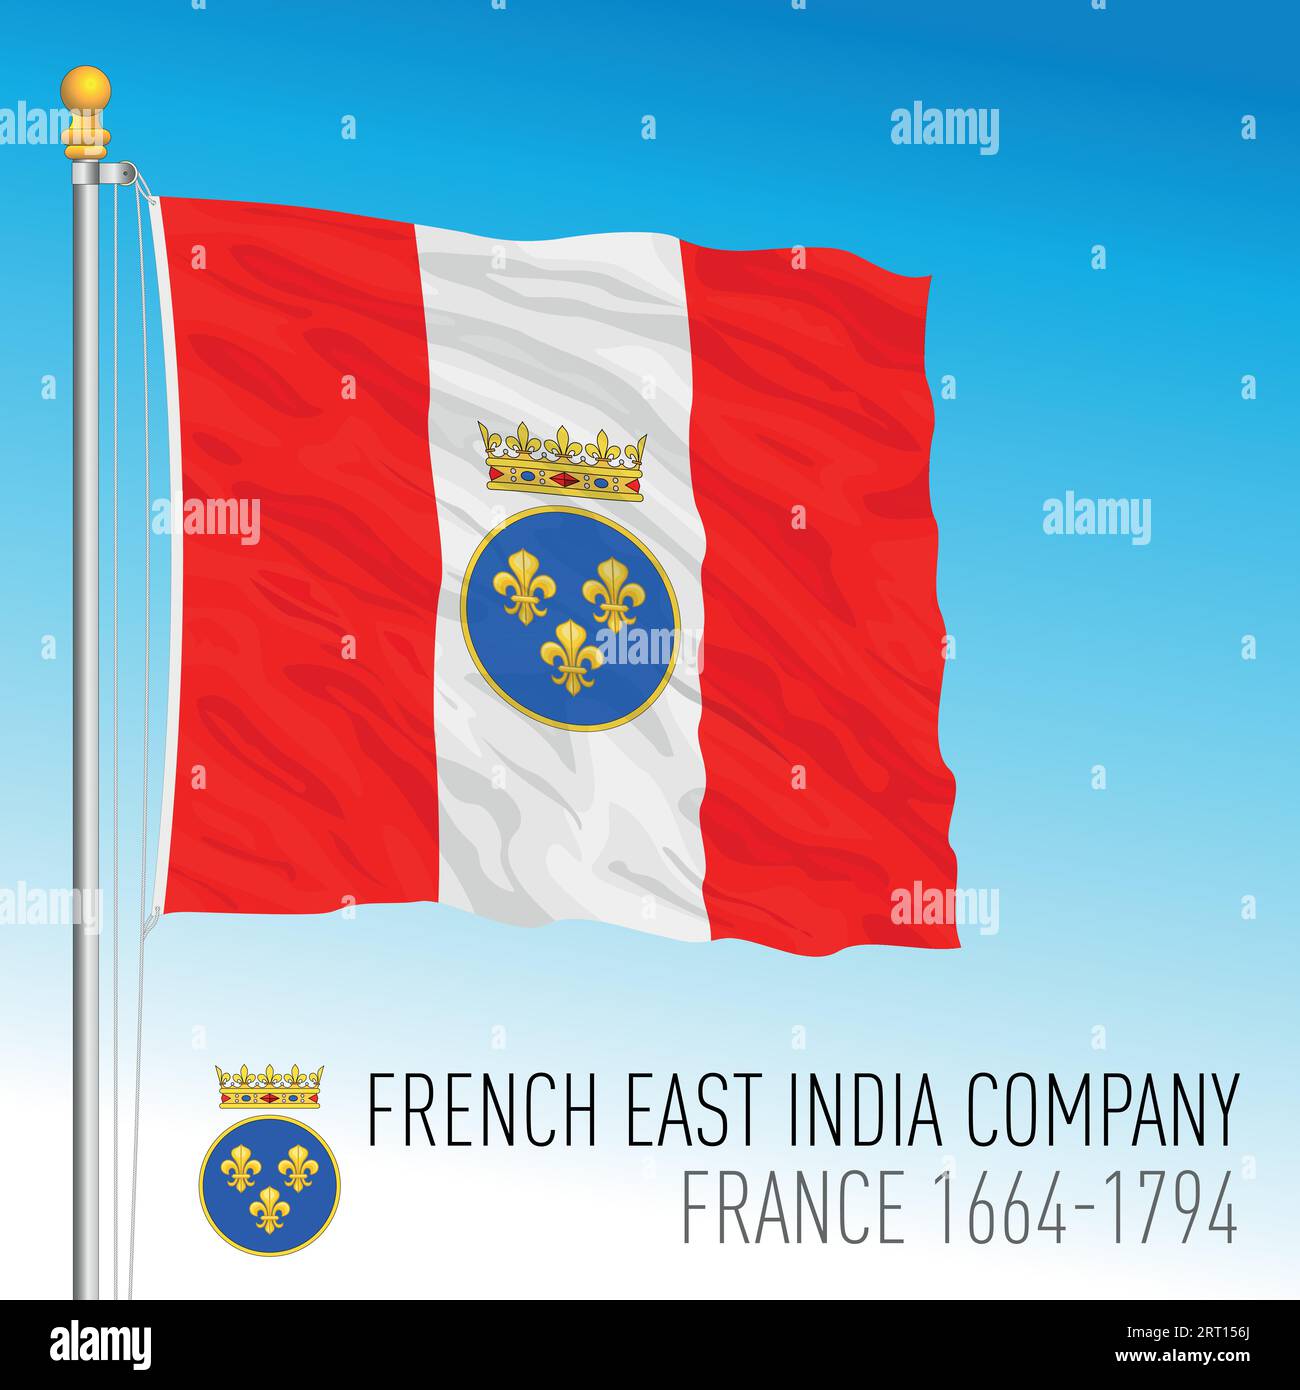 Drapeau brandissant historique de la Compagnie française des Indes orientales, France, 1664-1794, illustration vectorielle Illustration de Vecteur